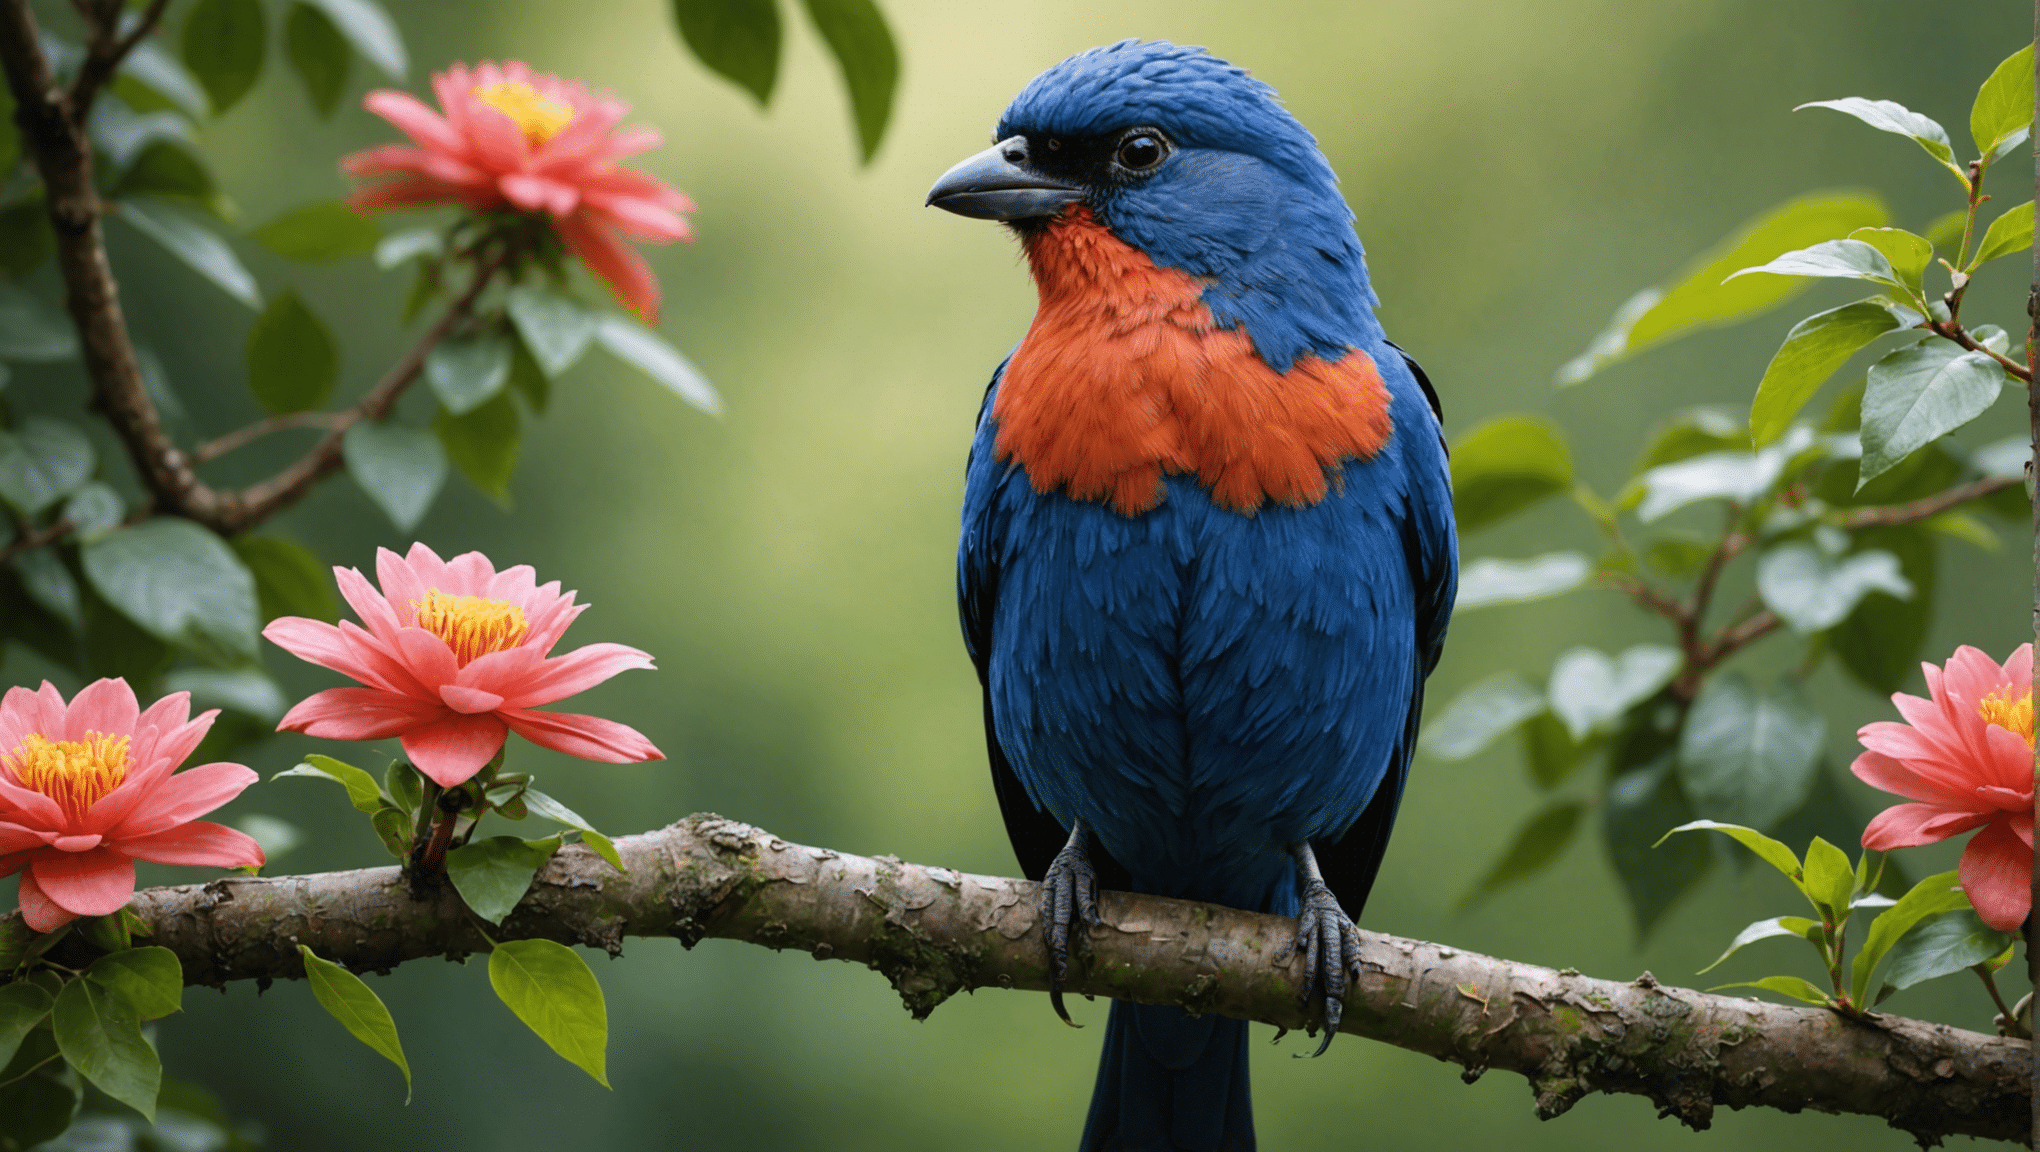 czy brzydkie ptaki są rzeczywiście piękne? przekonaj się o tym w fascynującej eksploracji ukrytego piękna natury i zaskakującej prawdy kryjącej się za pięknem pozornie brzydkich ptaków.